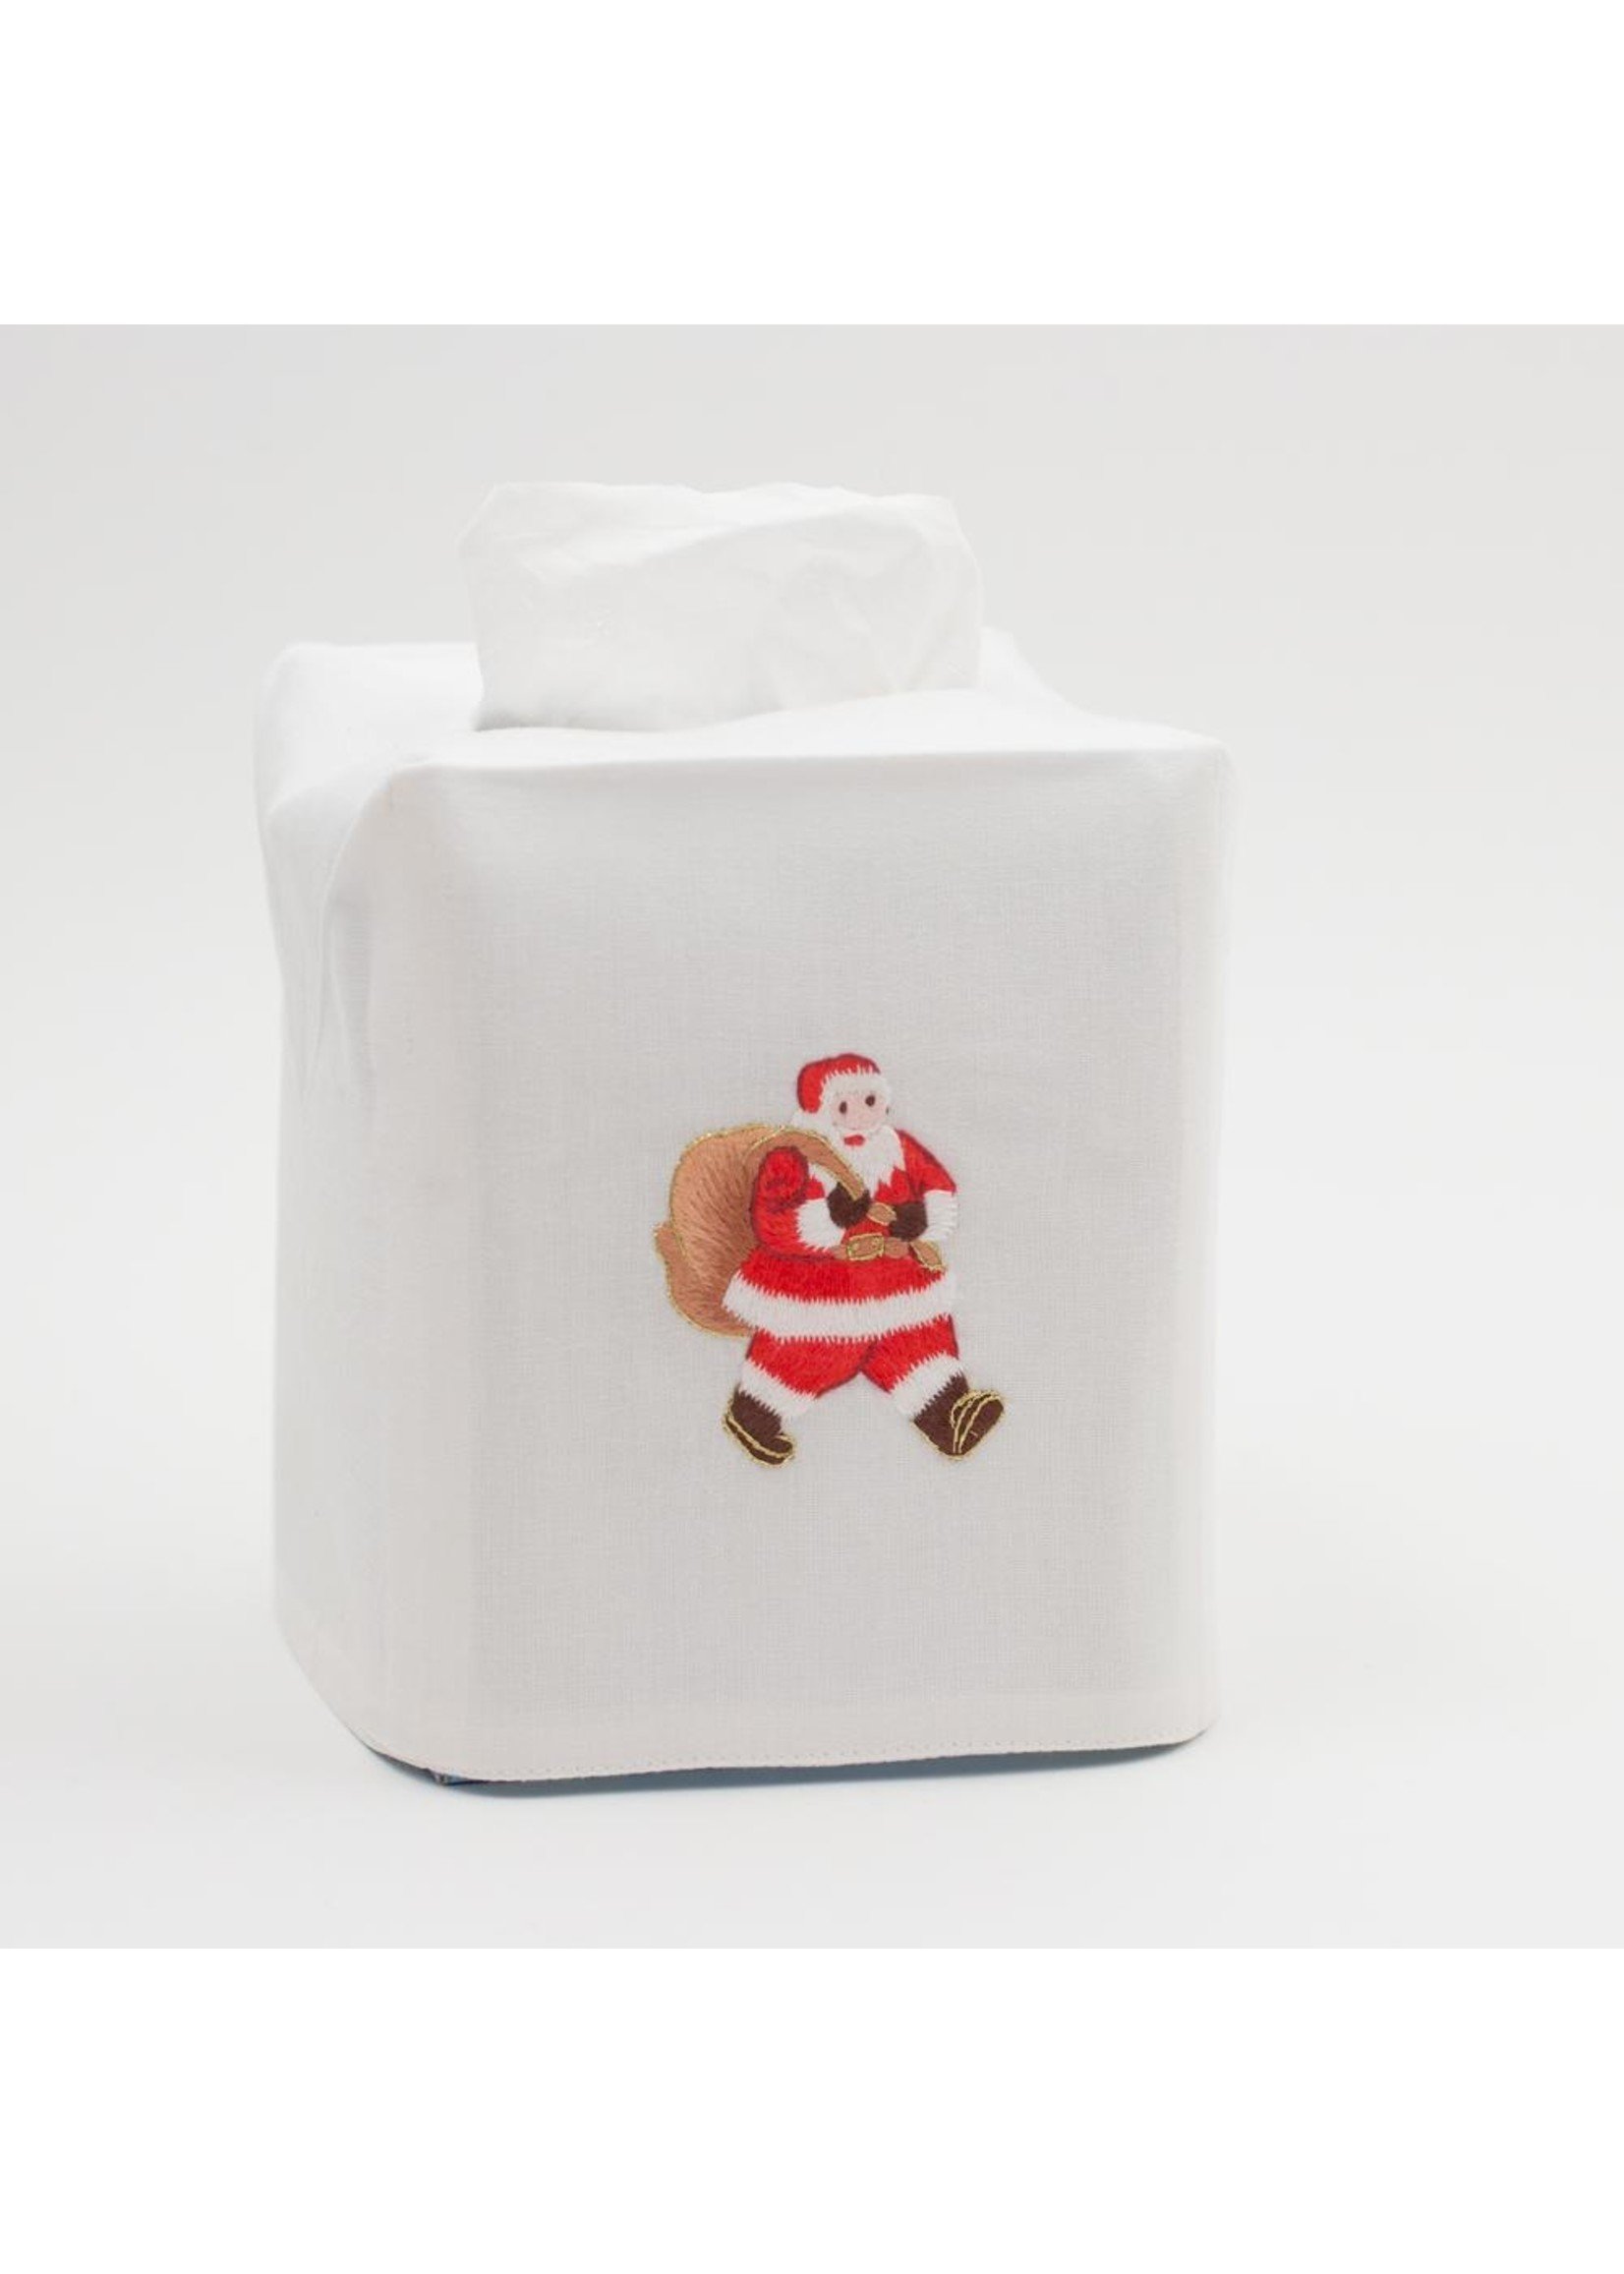 Henry Handwork Tissue Box Cover - Santa